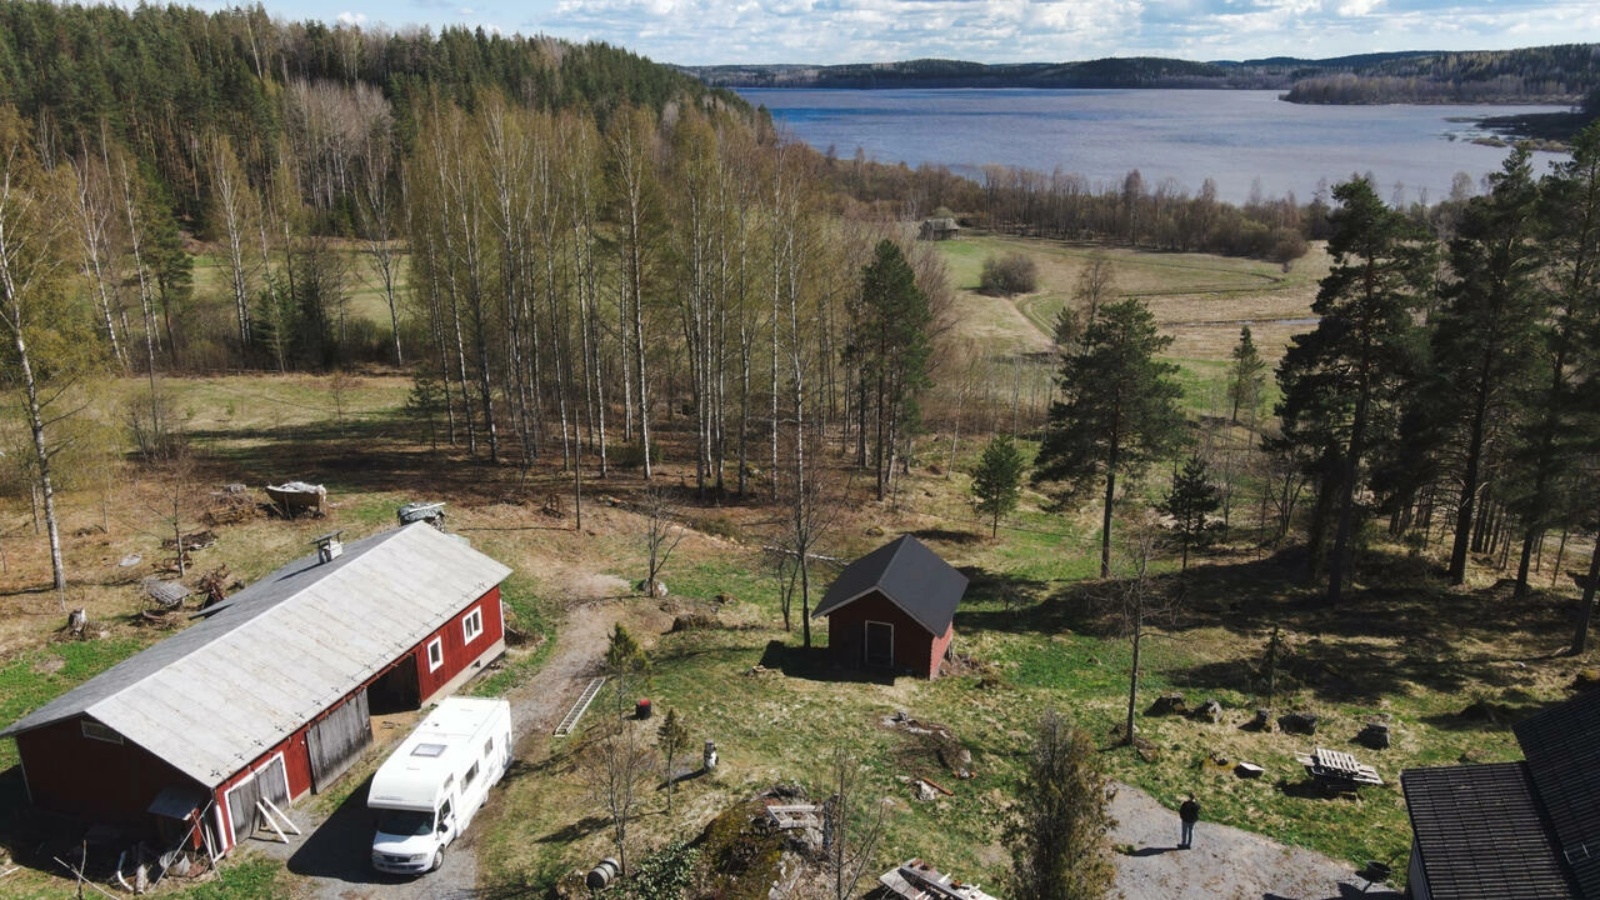 مشهد من الجو لمنزل في سوكوما بجنوب شرق فنلندا، على بعد بضعة مئات من الأمتار عن الحدود الروسية في 13 مايو 2022